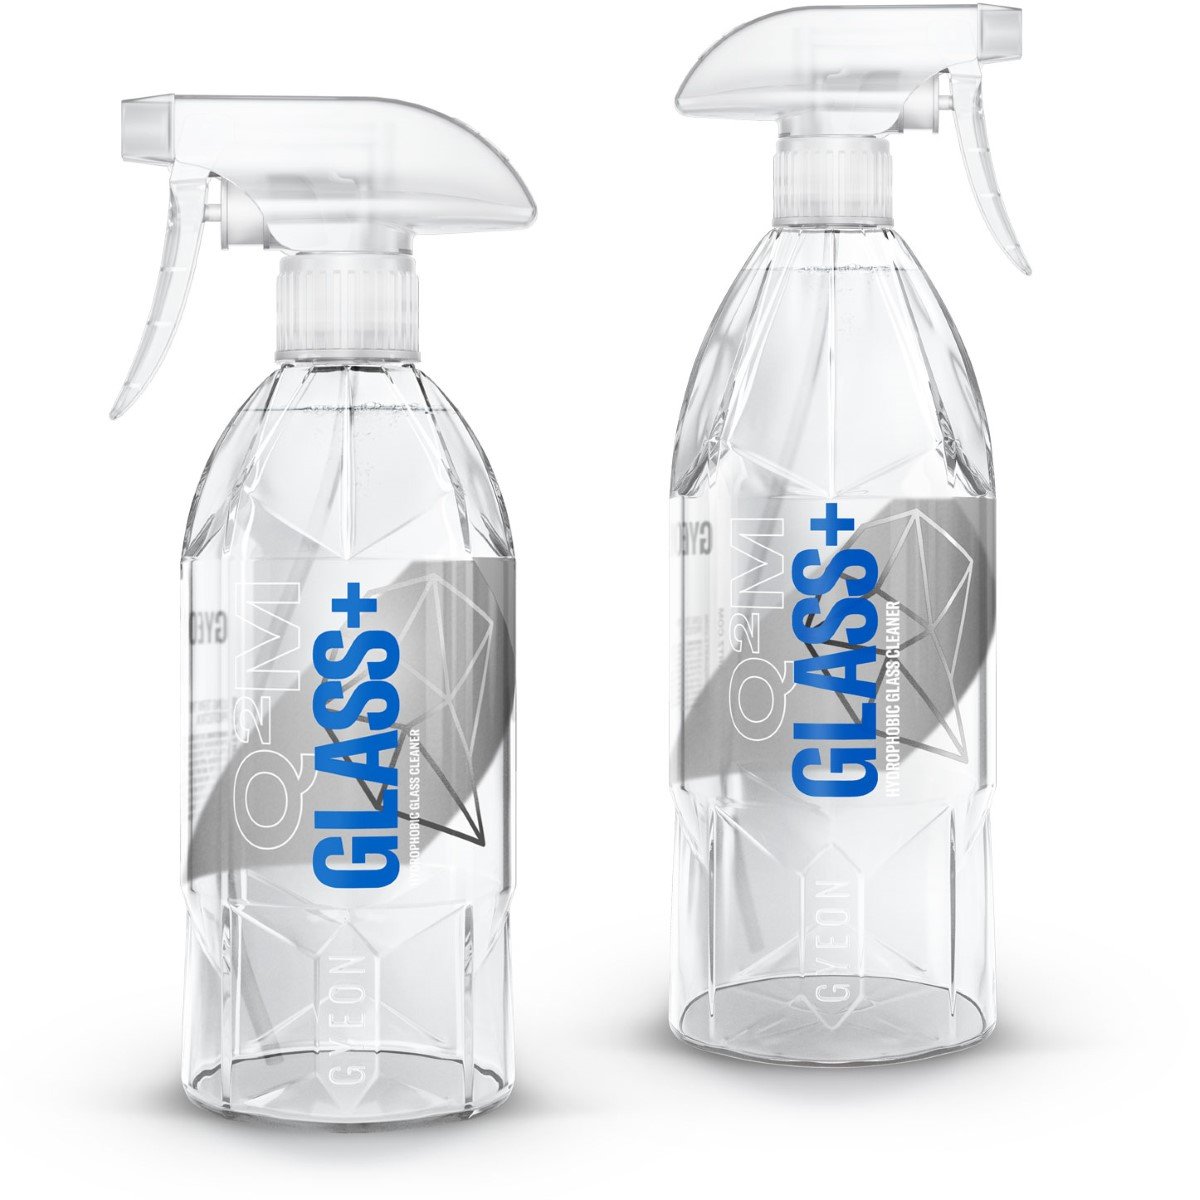 Q²M Glass+ Hydrophobic Glass Cleaner